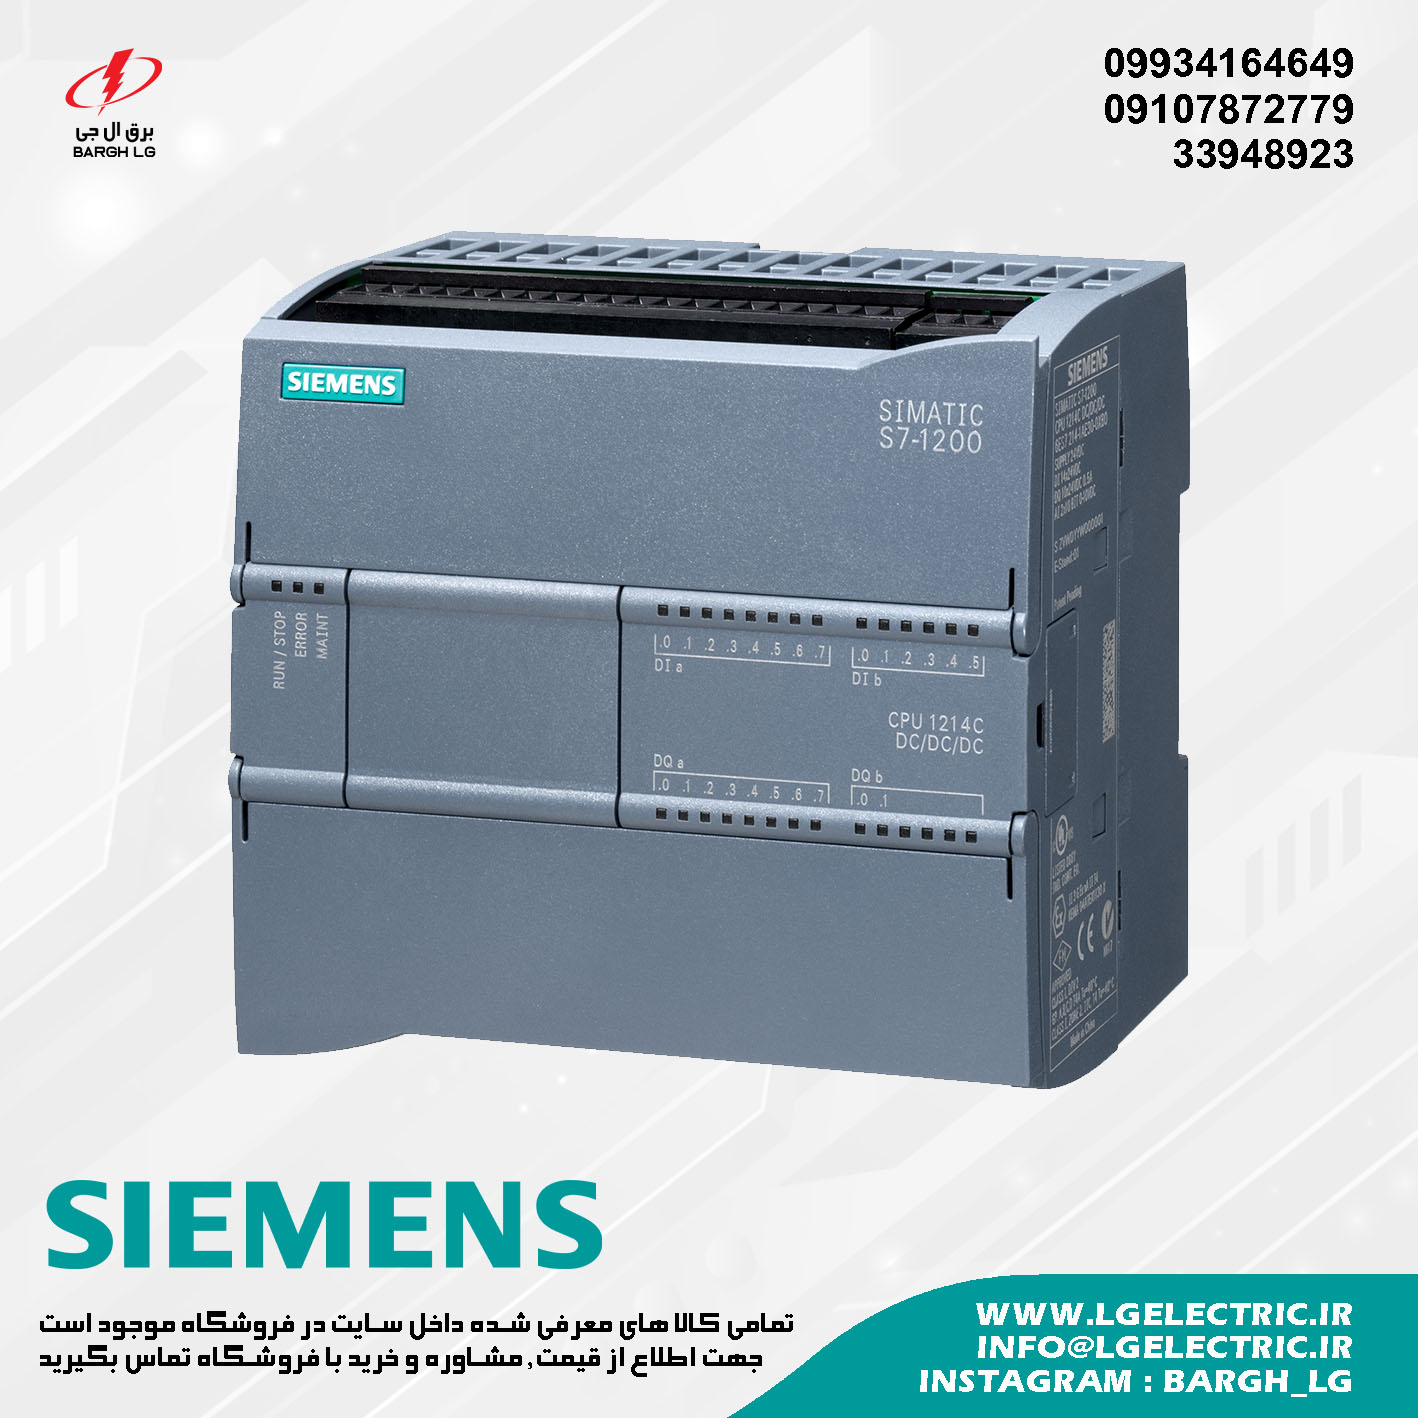 SIEMENS S7-1200 CPU 1214C